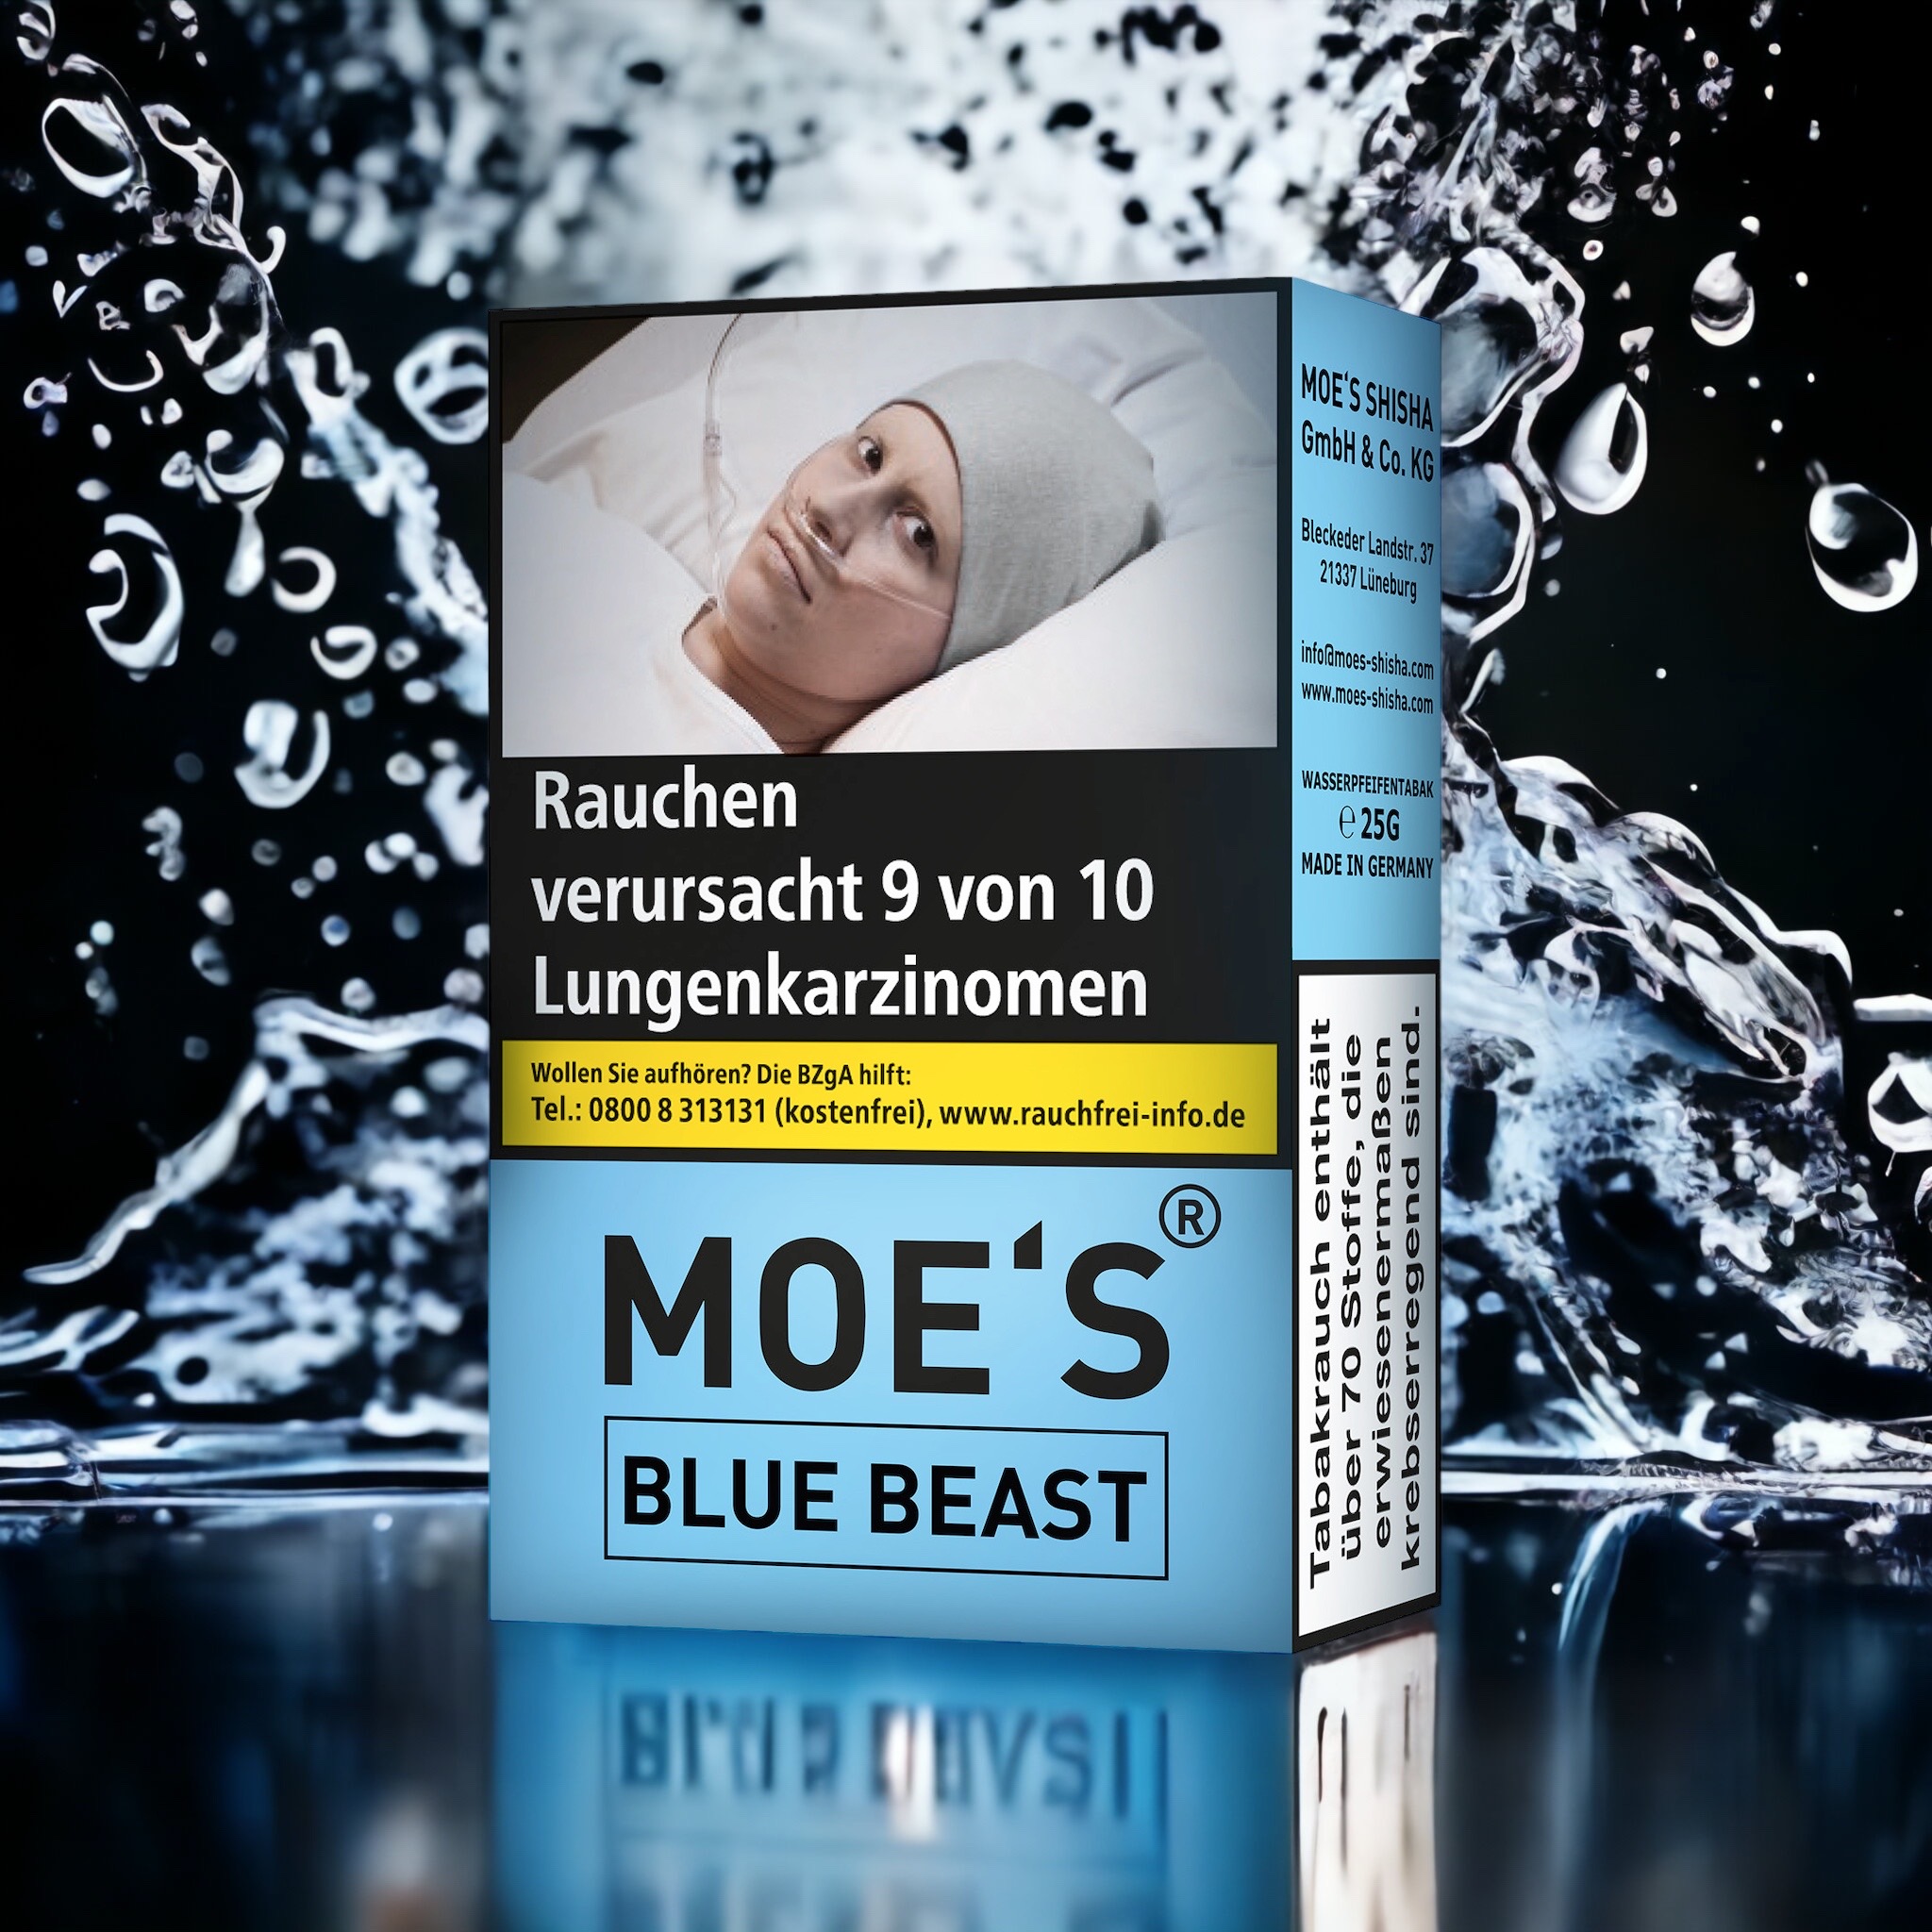 bei uns kriegen Sie den Moes - Blue Beast in 25g ab sofort